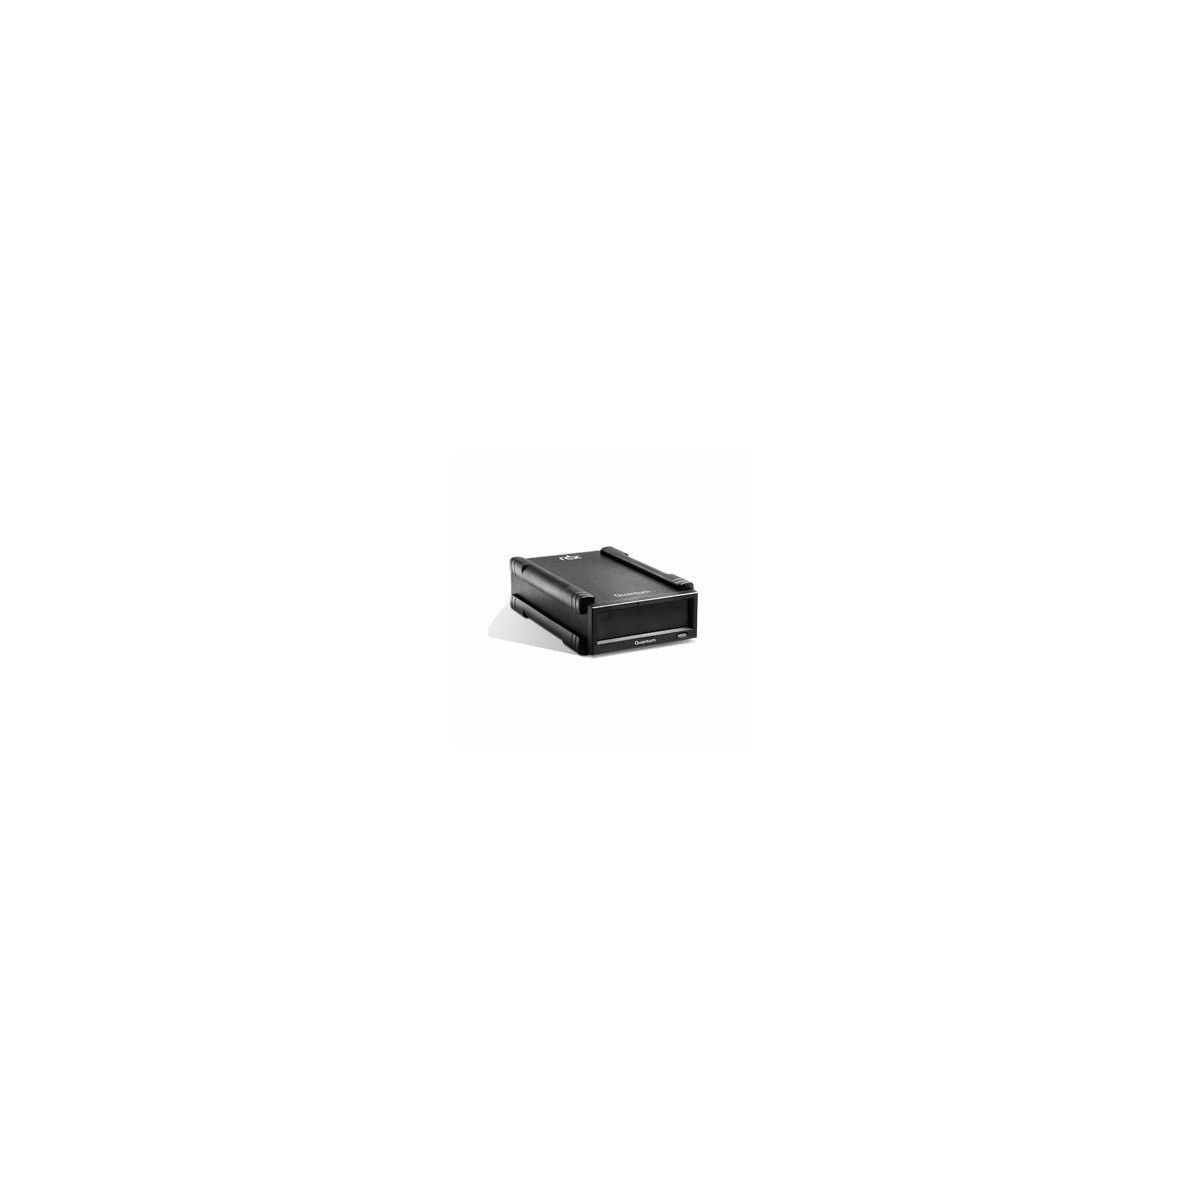 Quantum RDX - Tape Cartridge - 3000 GB - Black - 10 - 40 °C - 20 - 80% - -40 - 65 °C